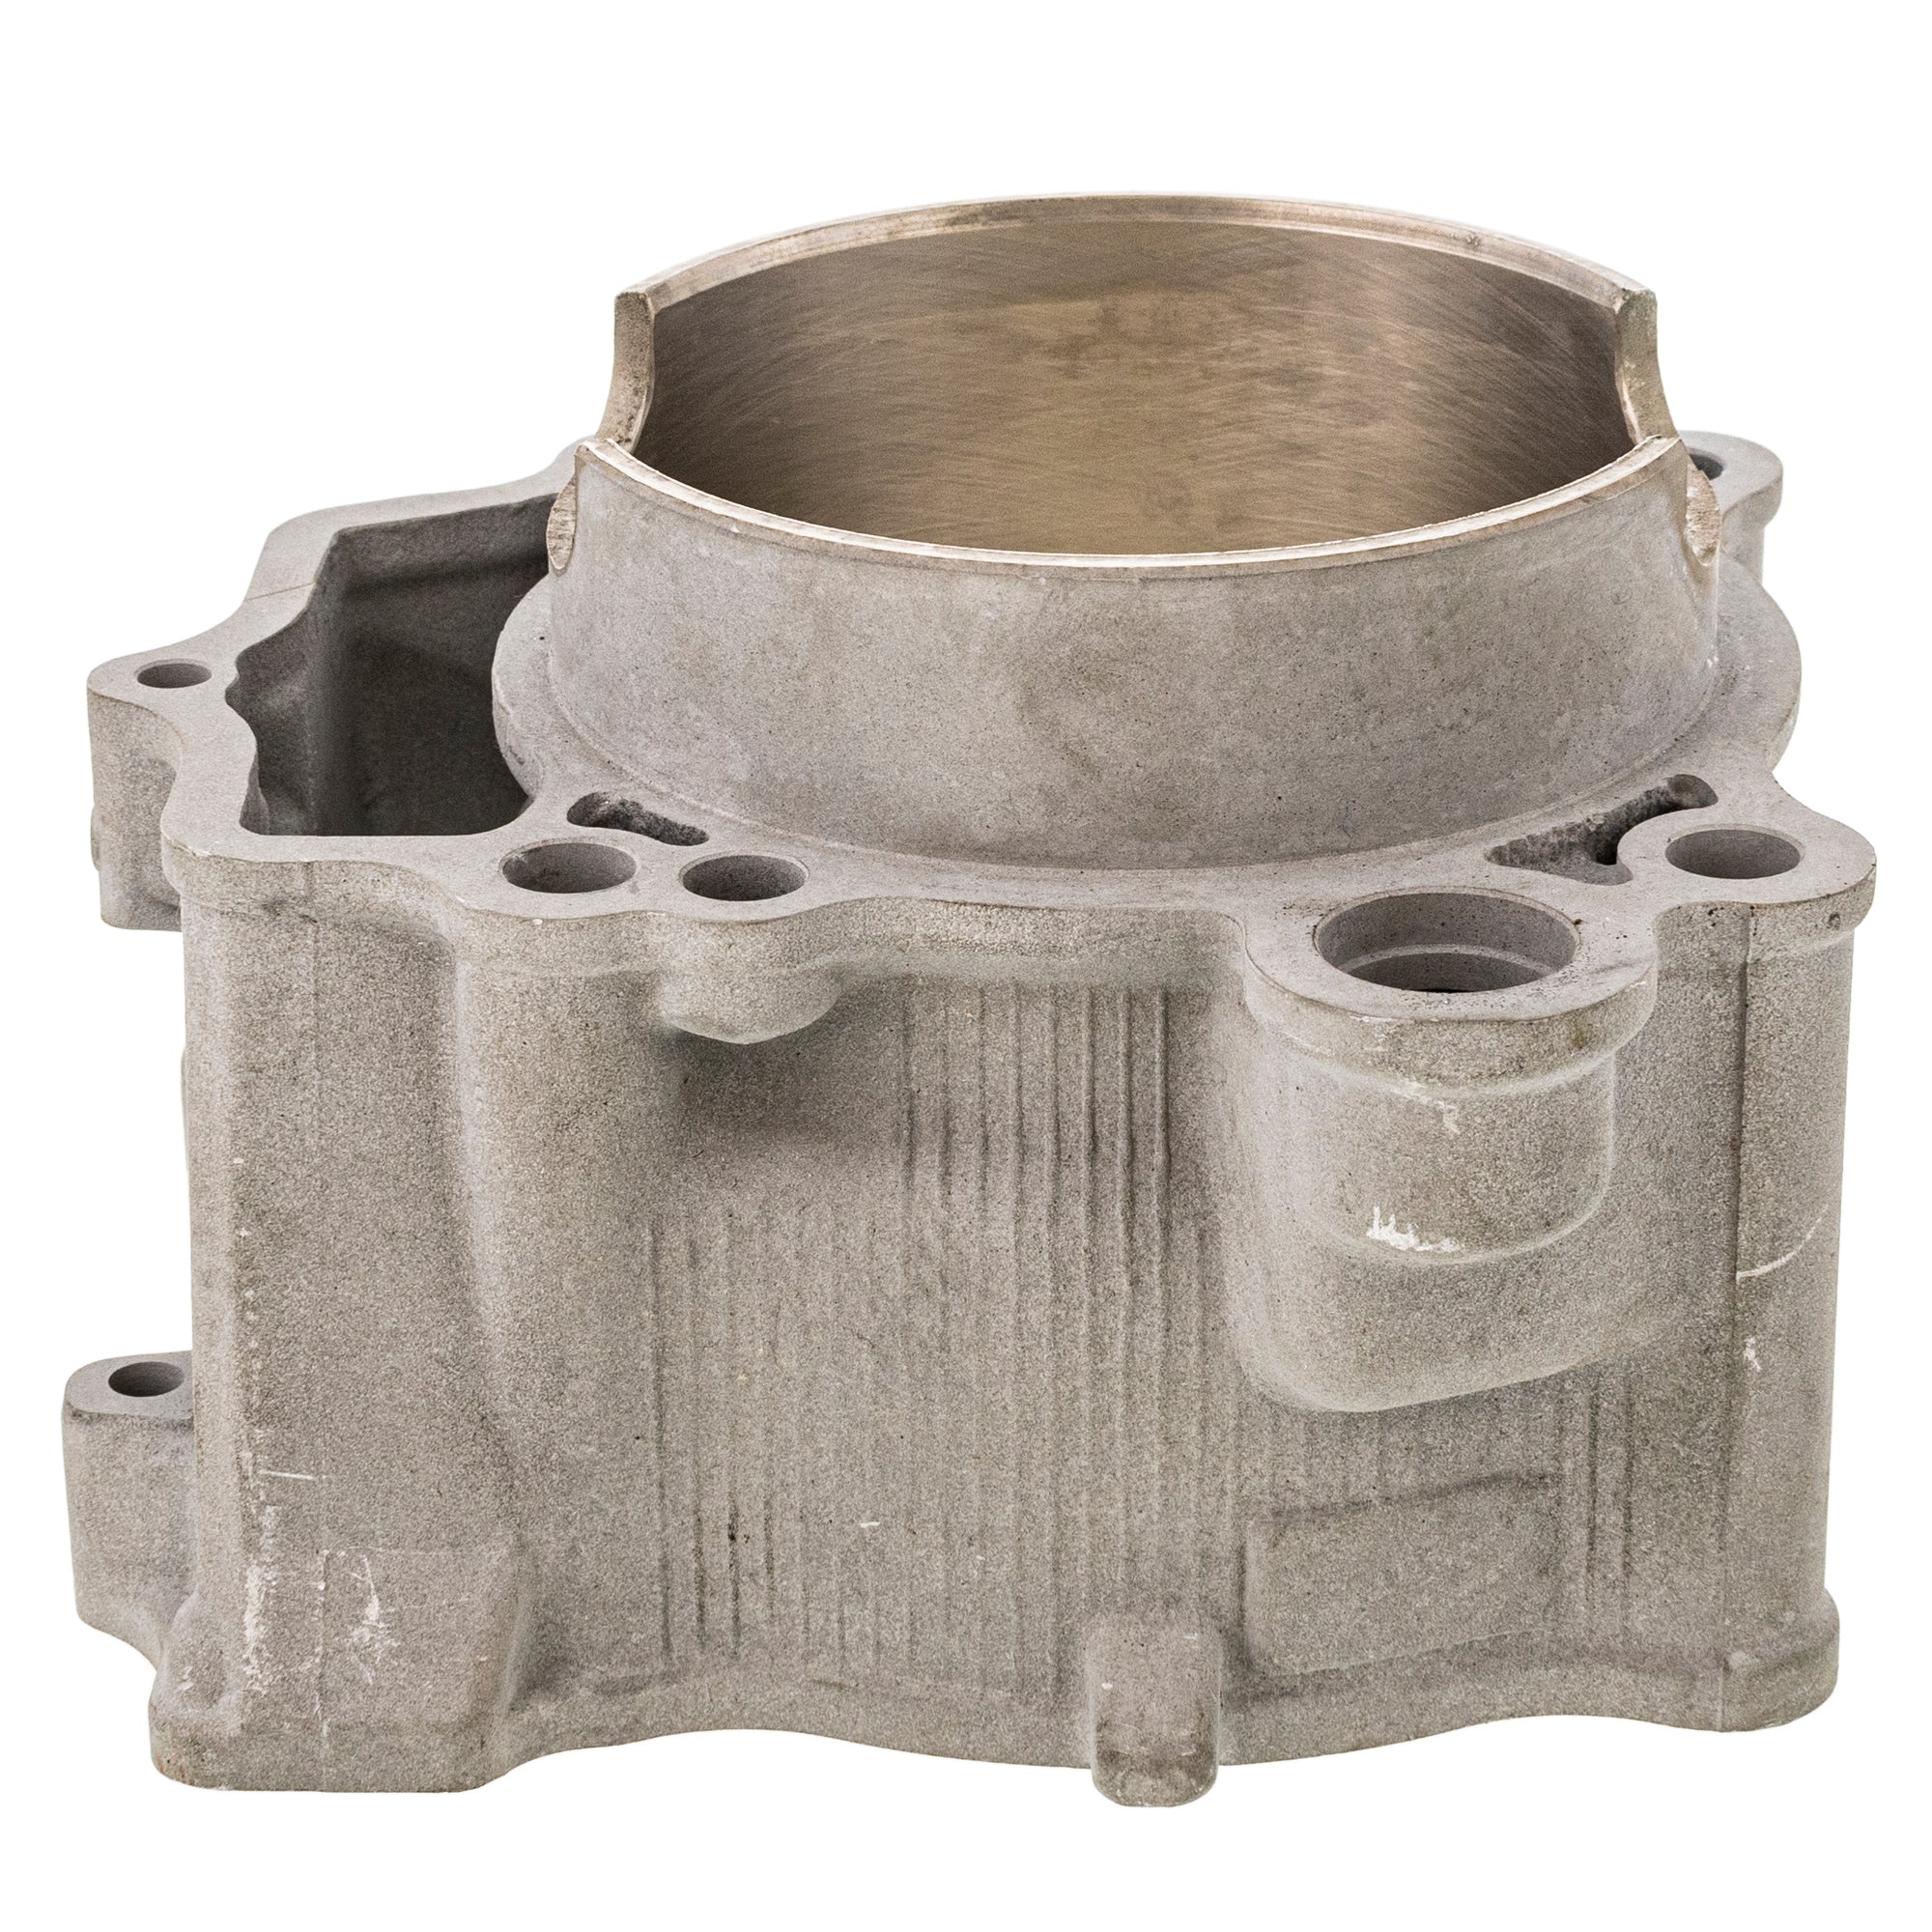 Engine Cylinder 519-CCY2246L For Yamaha 5TA-11311-12-00 5TA-11311-11-00 5TA-11311-10-00